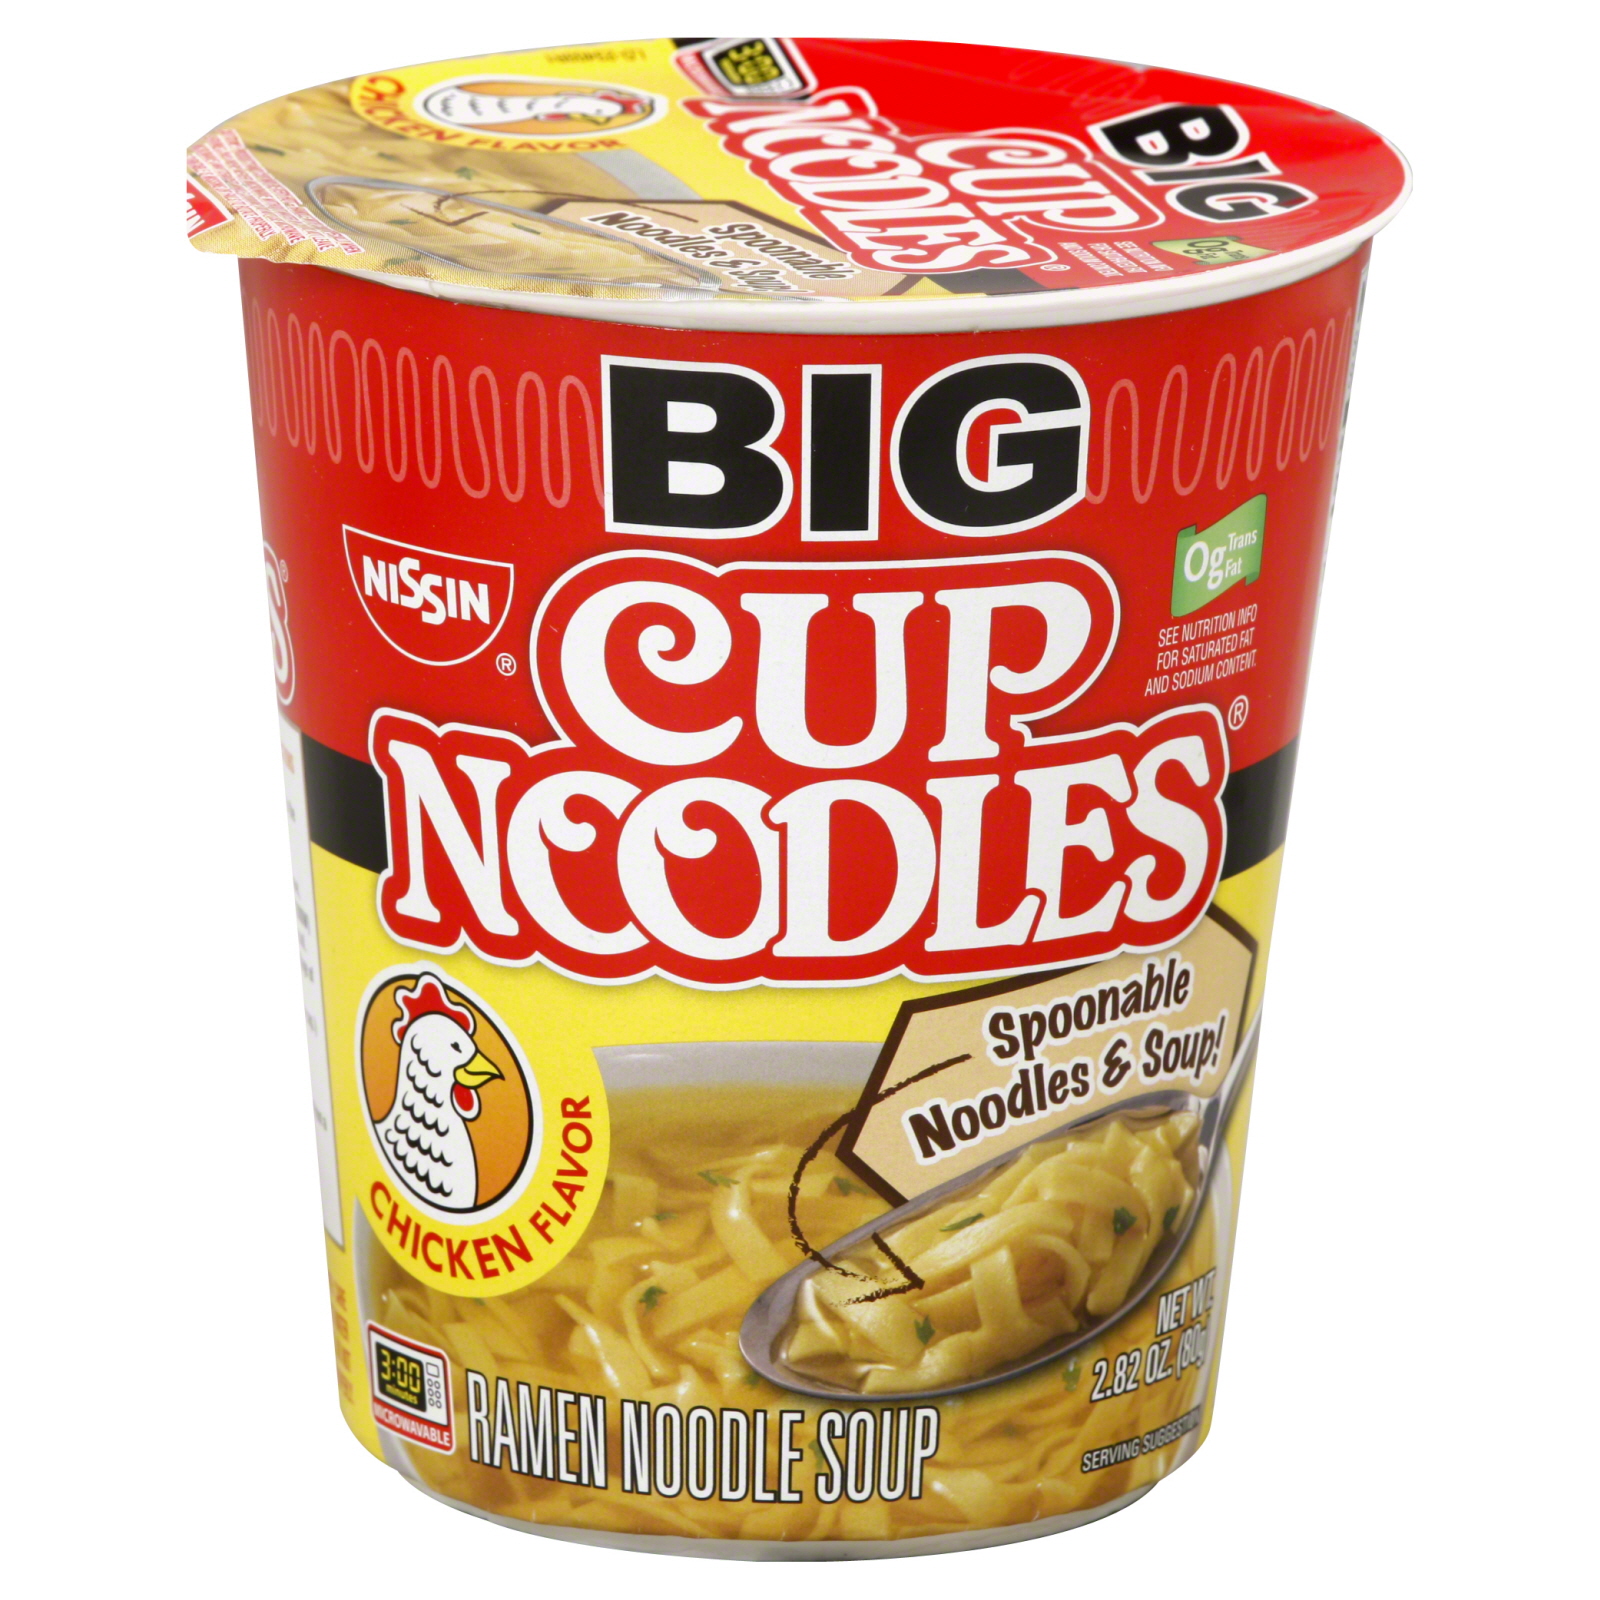 Nissin Big Cup Noodles Chicken Spoonable 2.82 oz